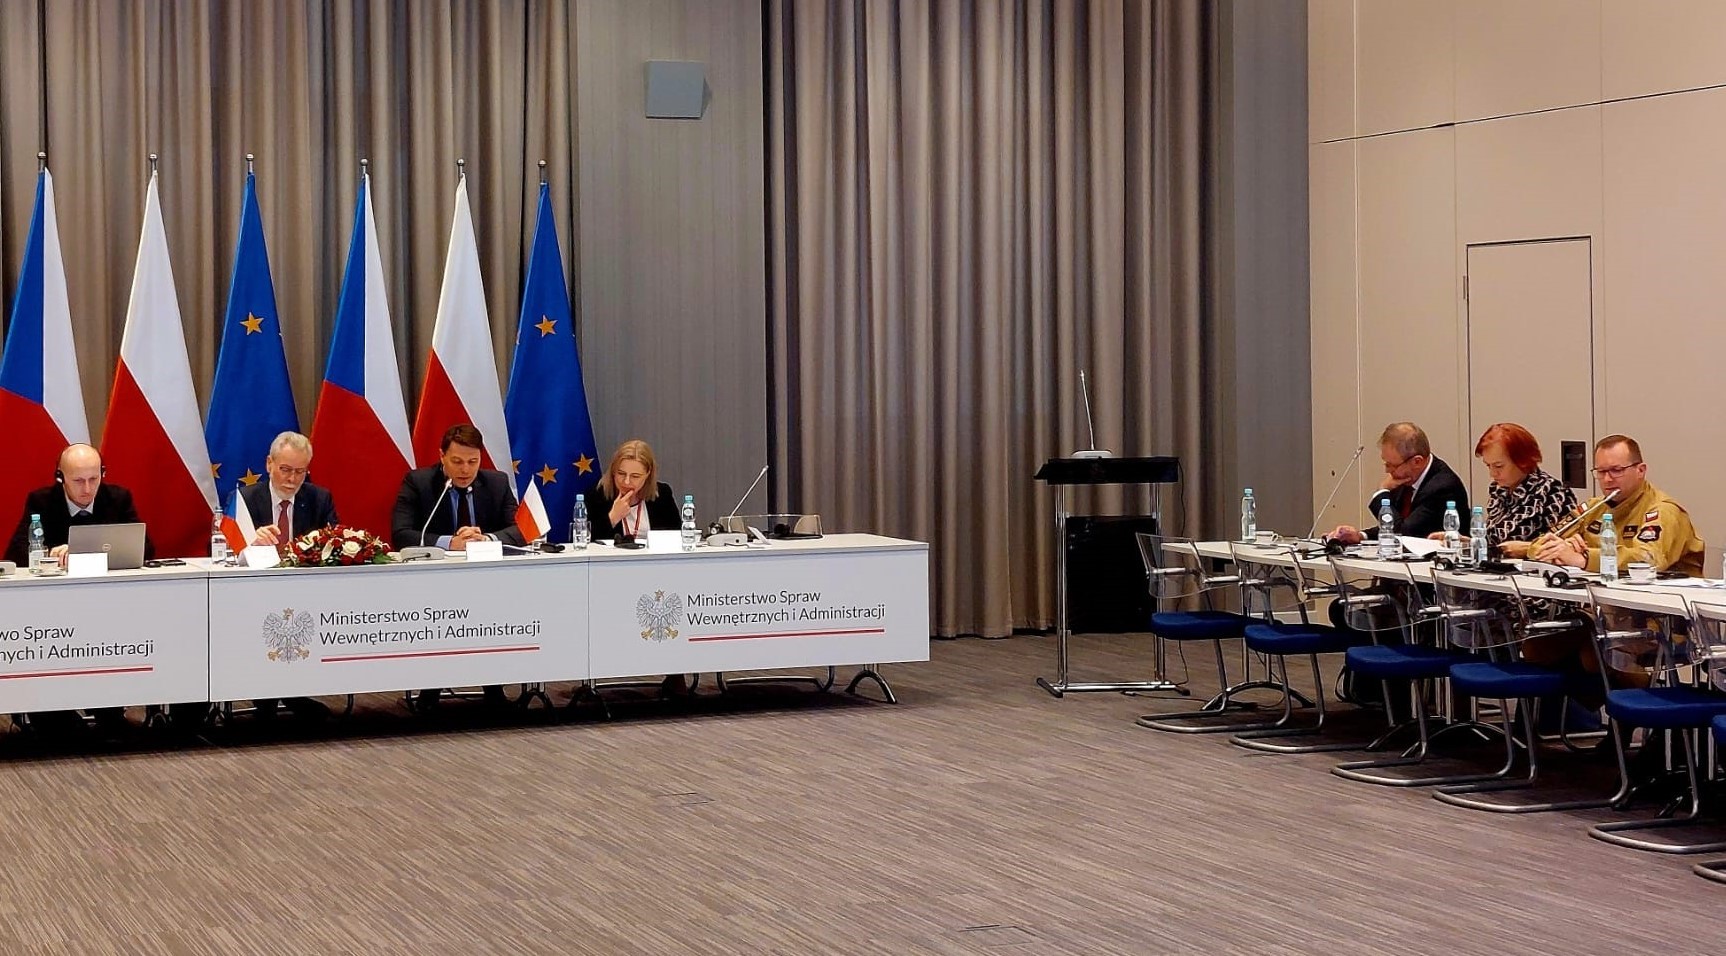 W sali siedzą uczestnicy posiedzenia, za stołem frontowym stoją flagi Czech, Polski i UE. Po prawej stronie sali przy stole siedzi zastępca komendanta głównego PSP